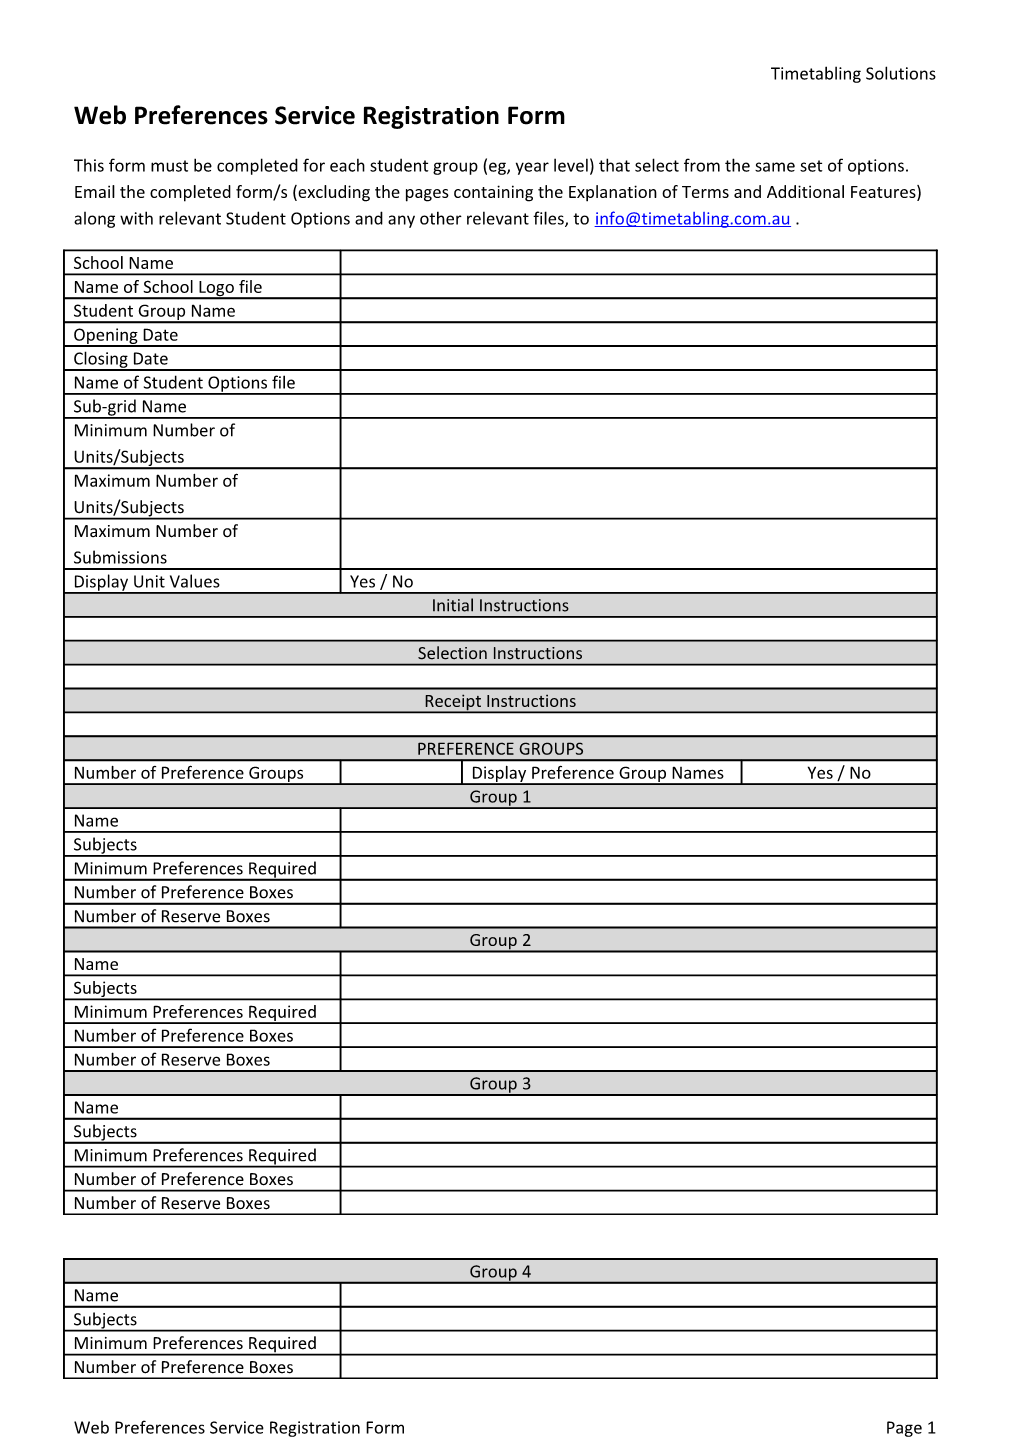 Web Preferences Service Registration Form